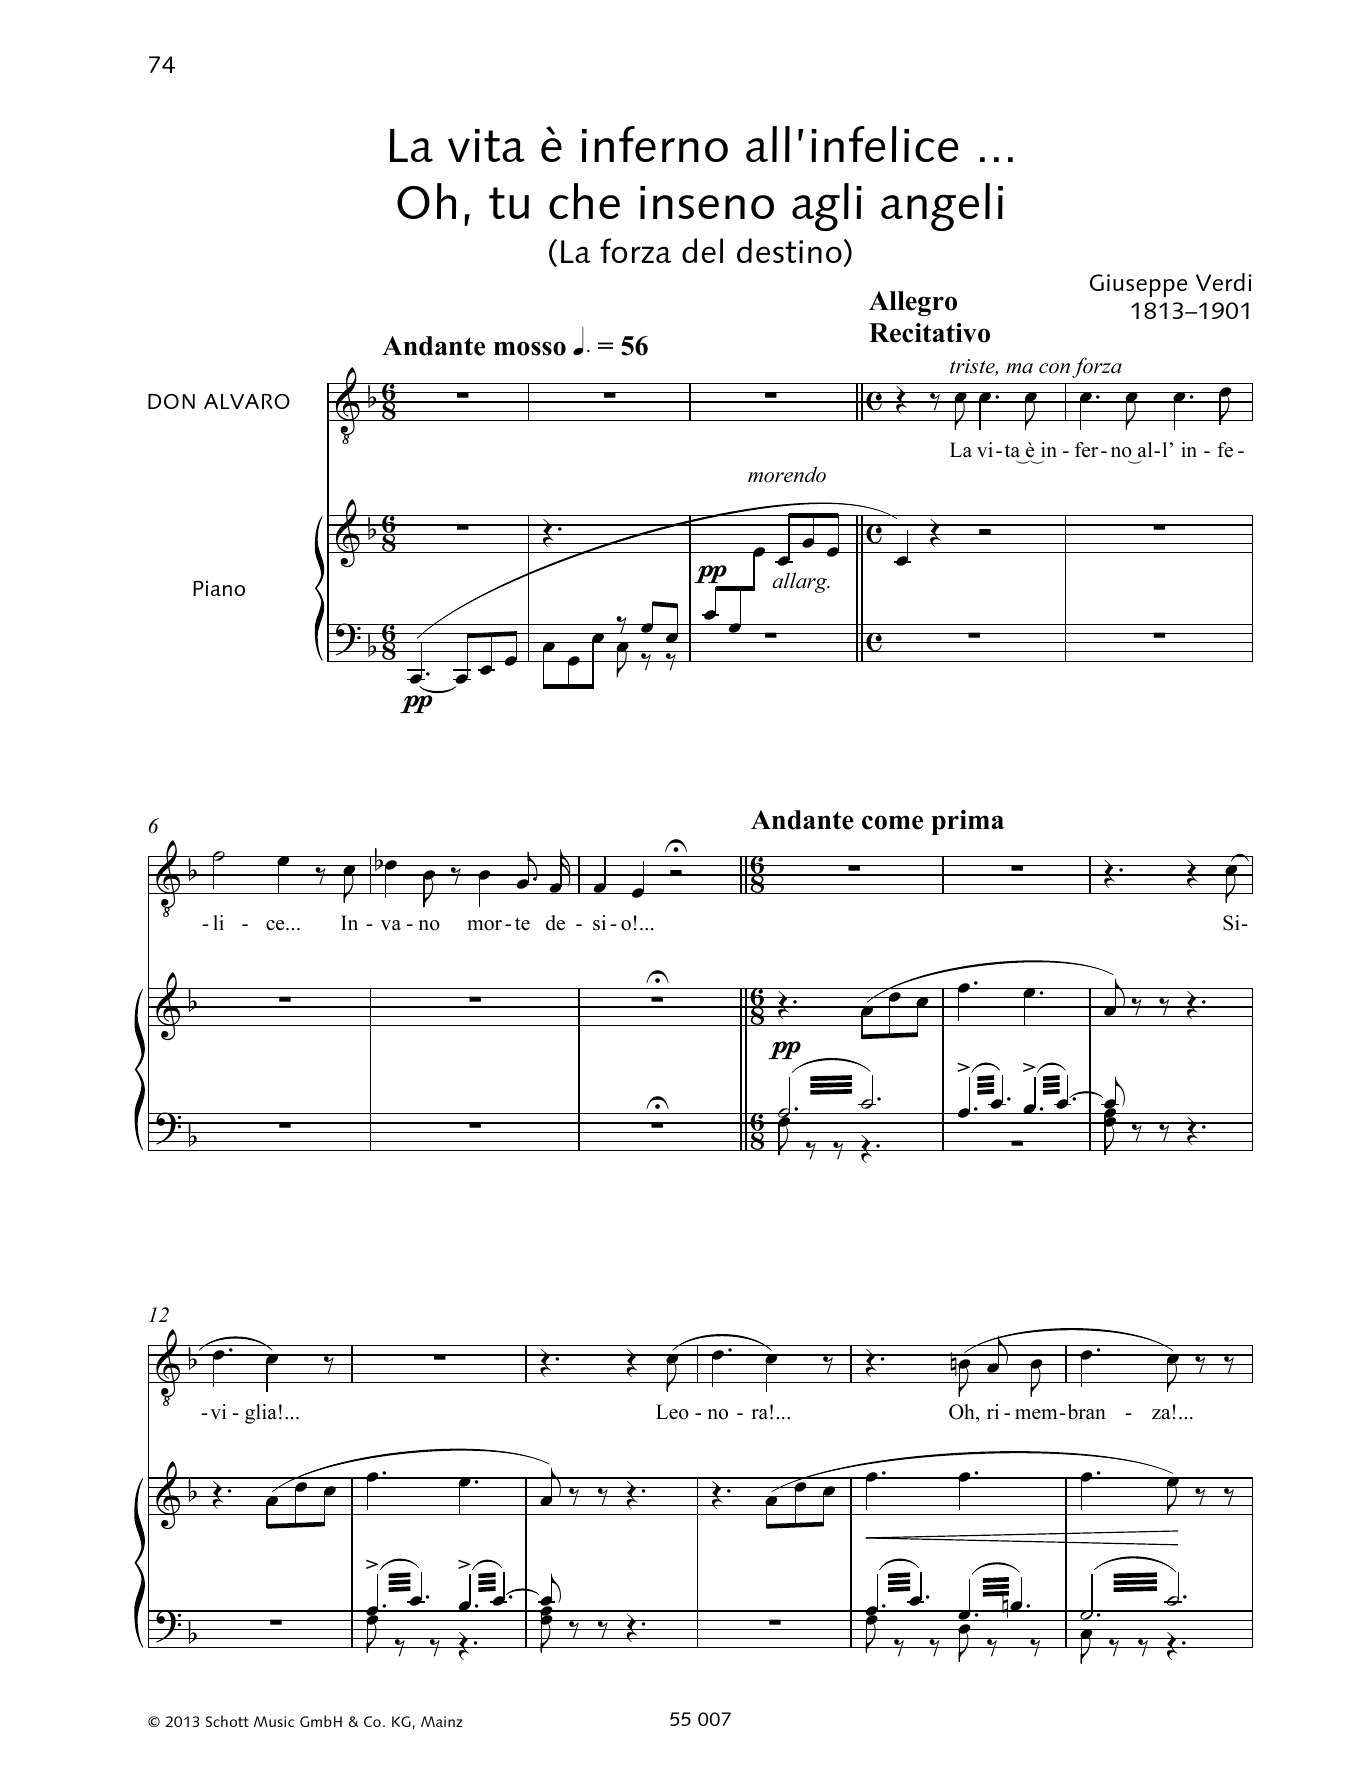 Francesca Licciarda La vita è inferno all'infelice ... Oh, tu che in seno agli angeli Sheet Music Notes & Chords for Piano & Vocal - Download or Print PDF